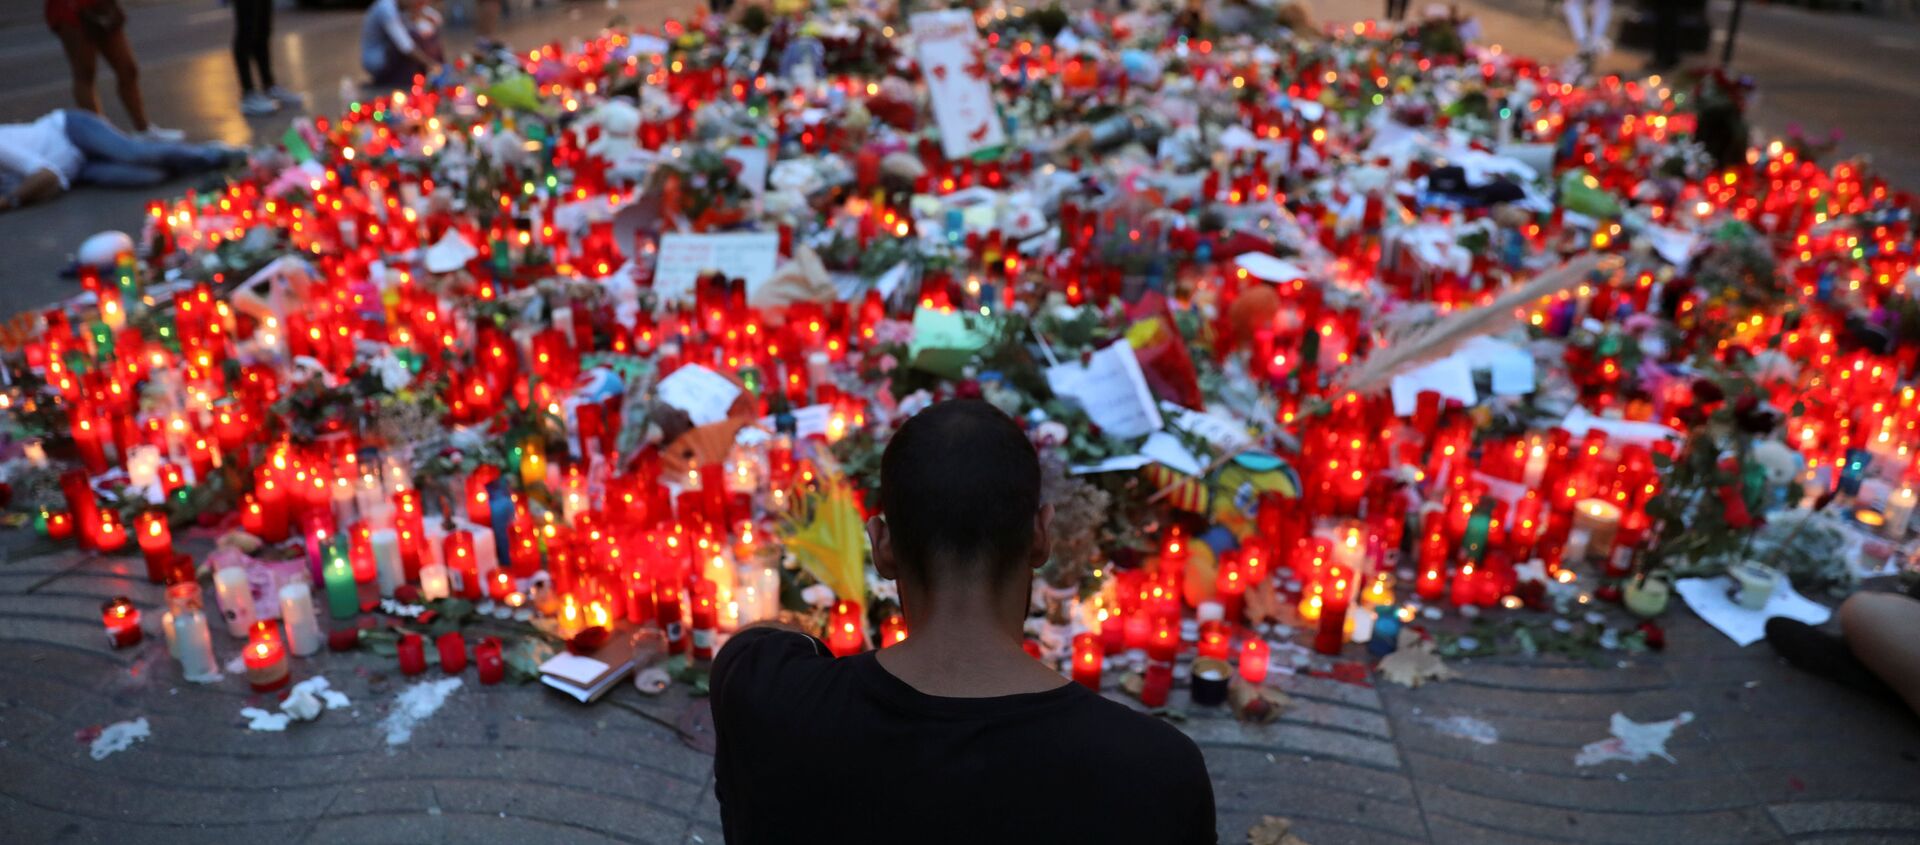 La gente rinde homenaje a las víctimas del atentado en La Rambla, Barcelona (archivo) - Sputnik Mundo, 1920, 06.08.2018